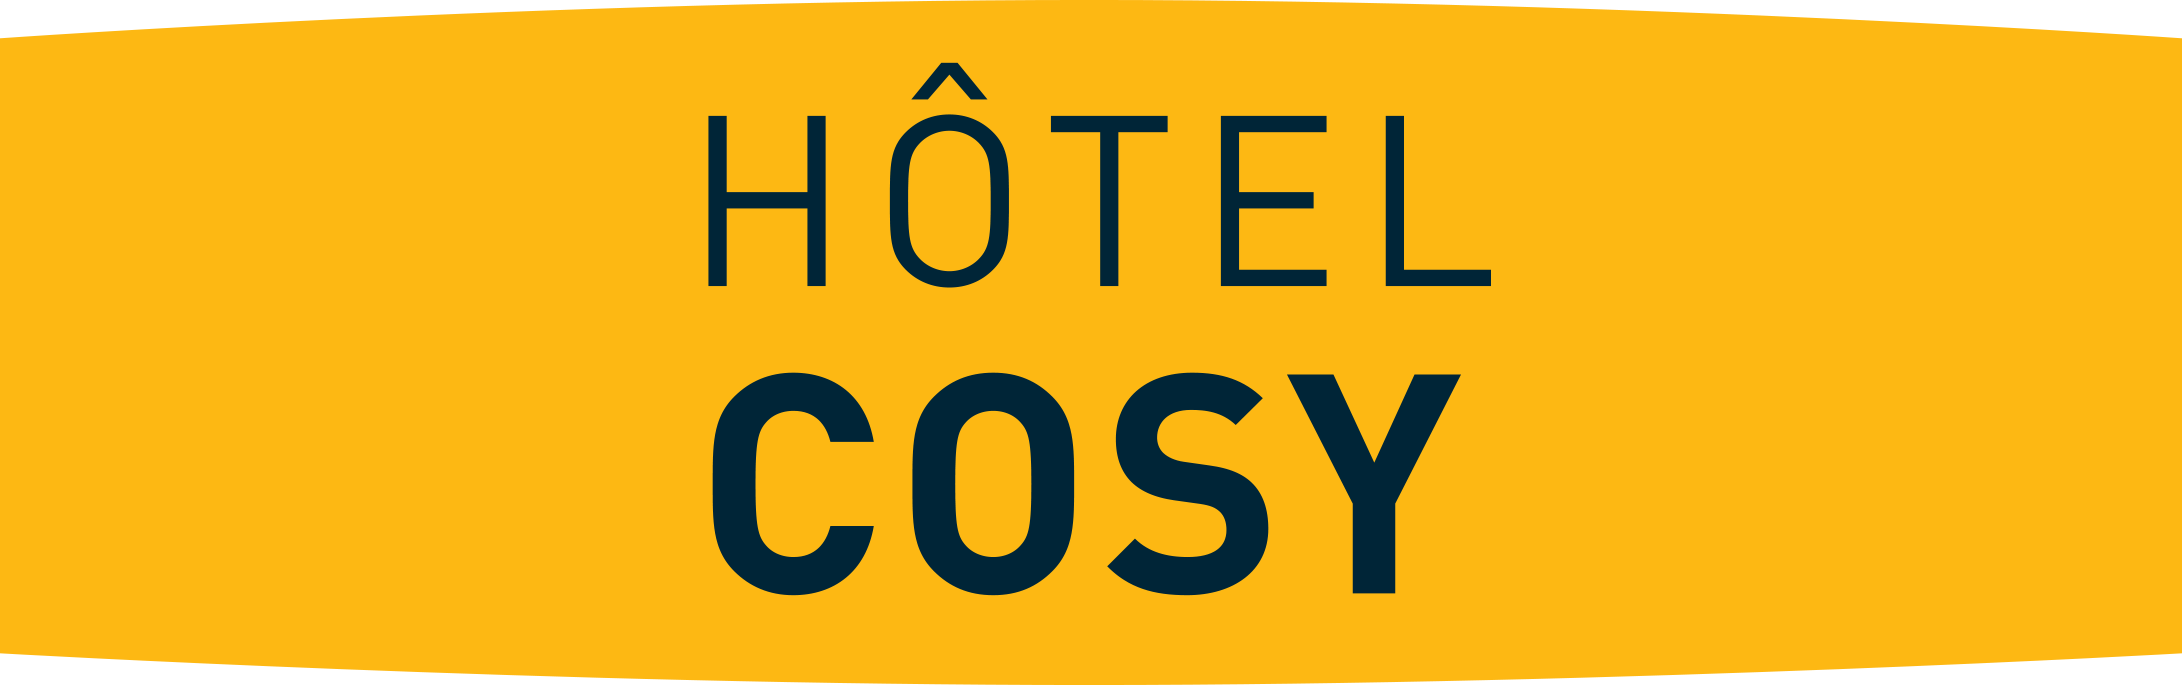 Hôtel cosy – une atmosphère cocooning et chaleureuse